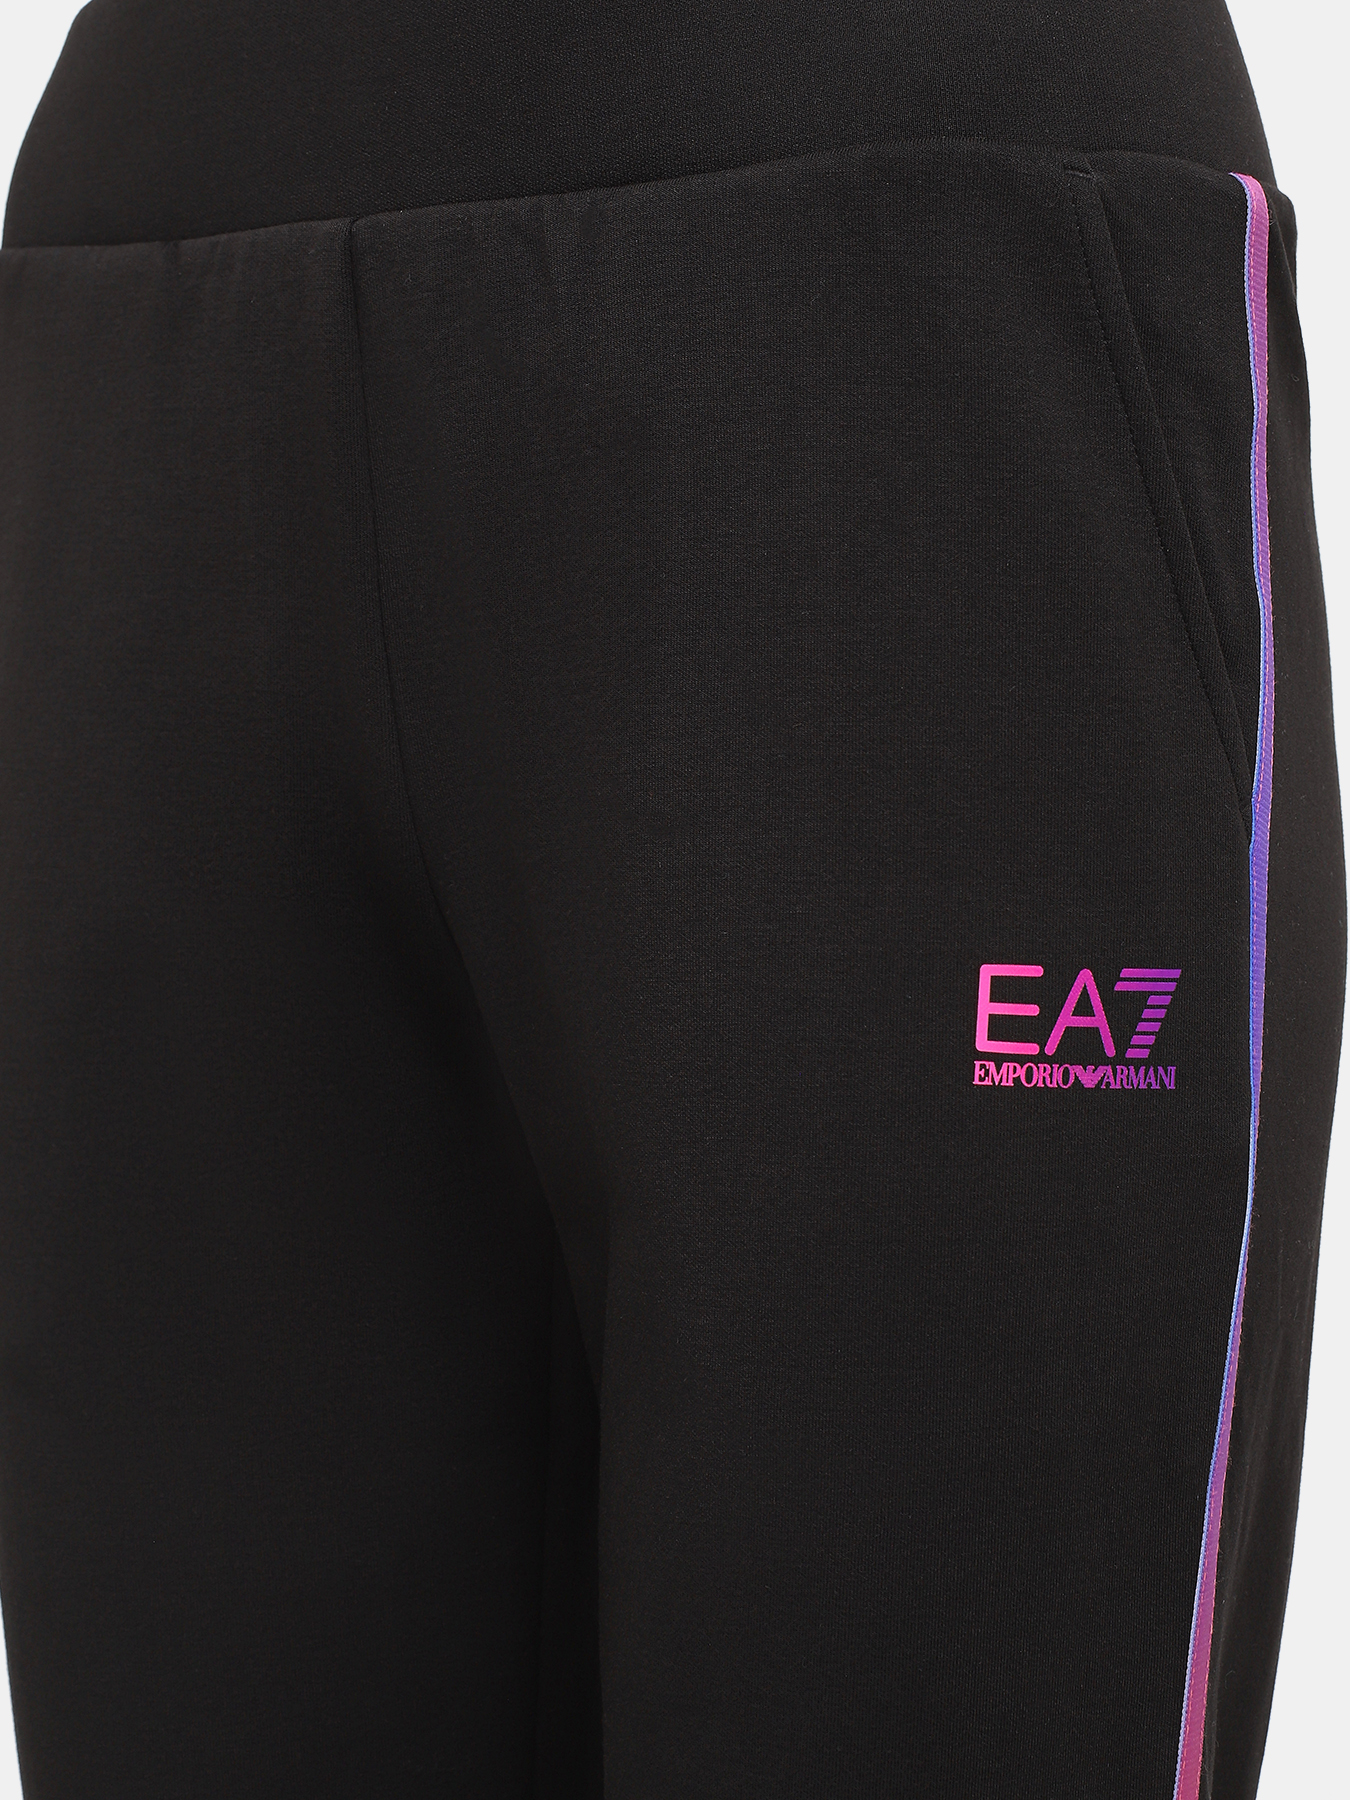 Спортивные брюки EA7 Emporio Armani 423025-045, цвет черный, размер 48-50 - фото 5